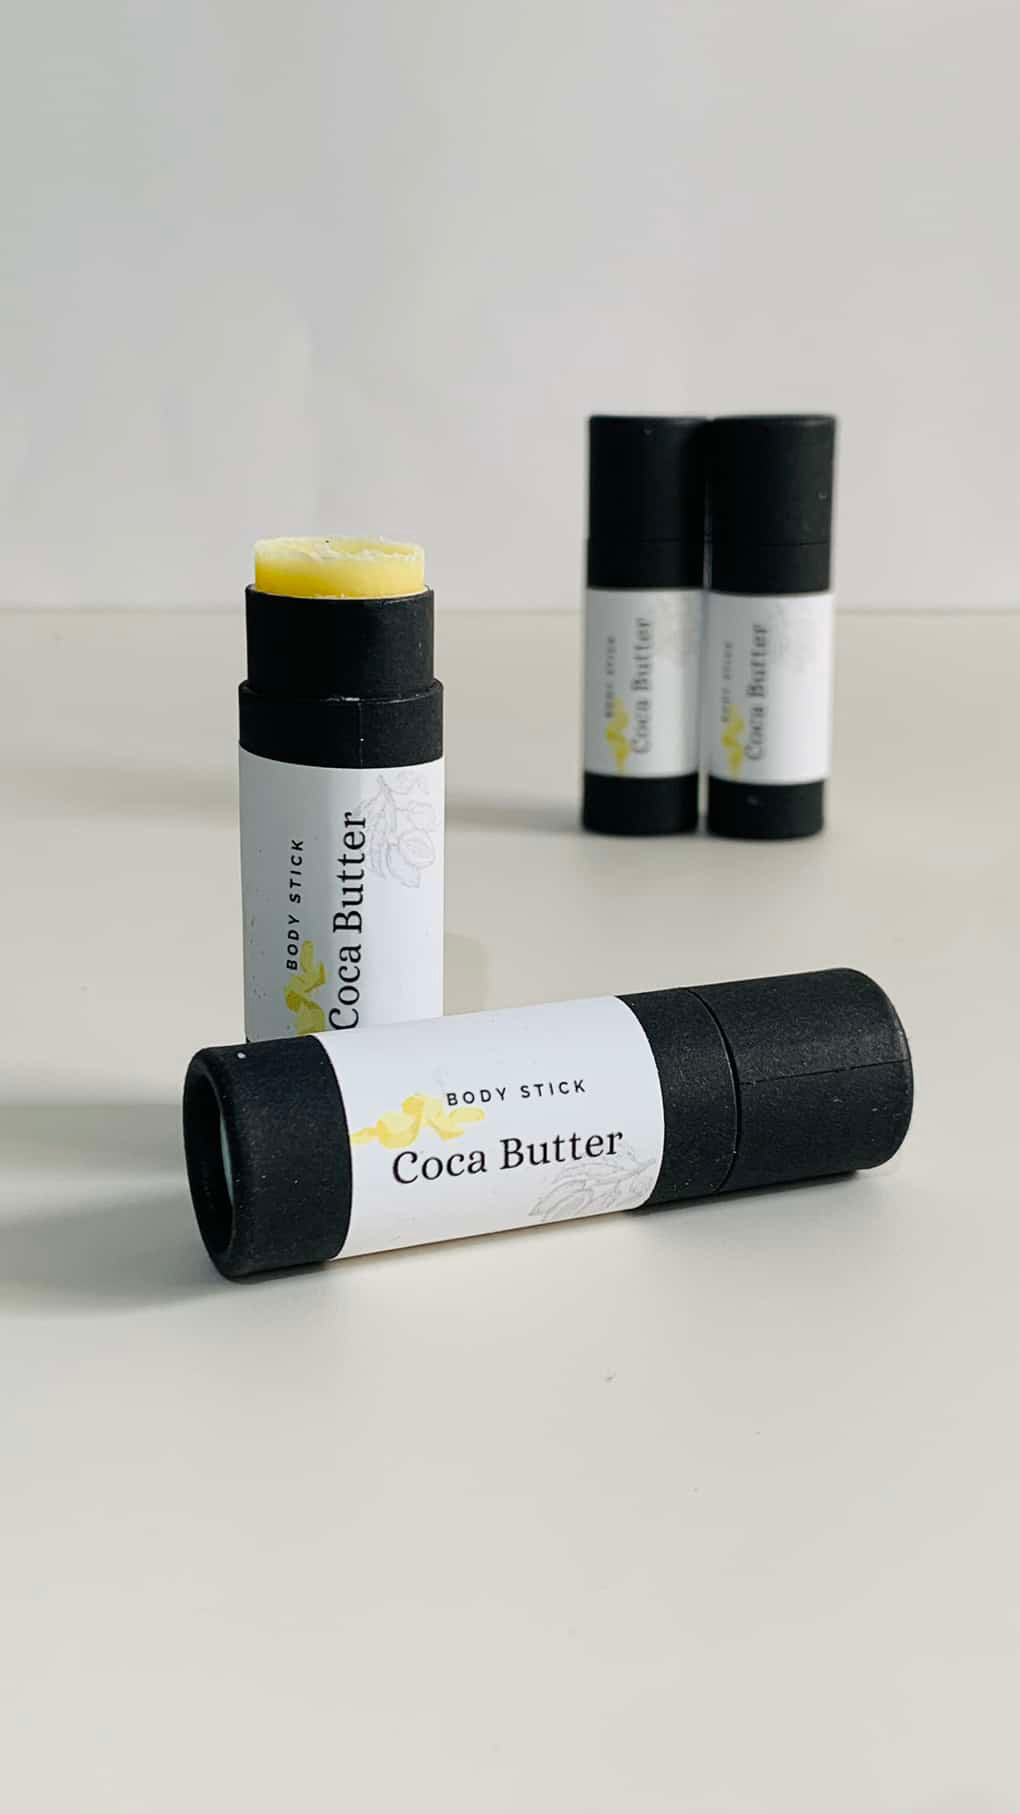 Cocoa Butter Body Stick